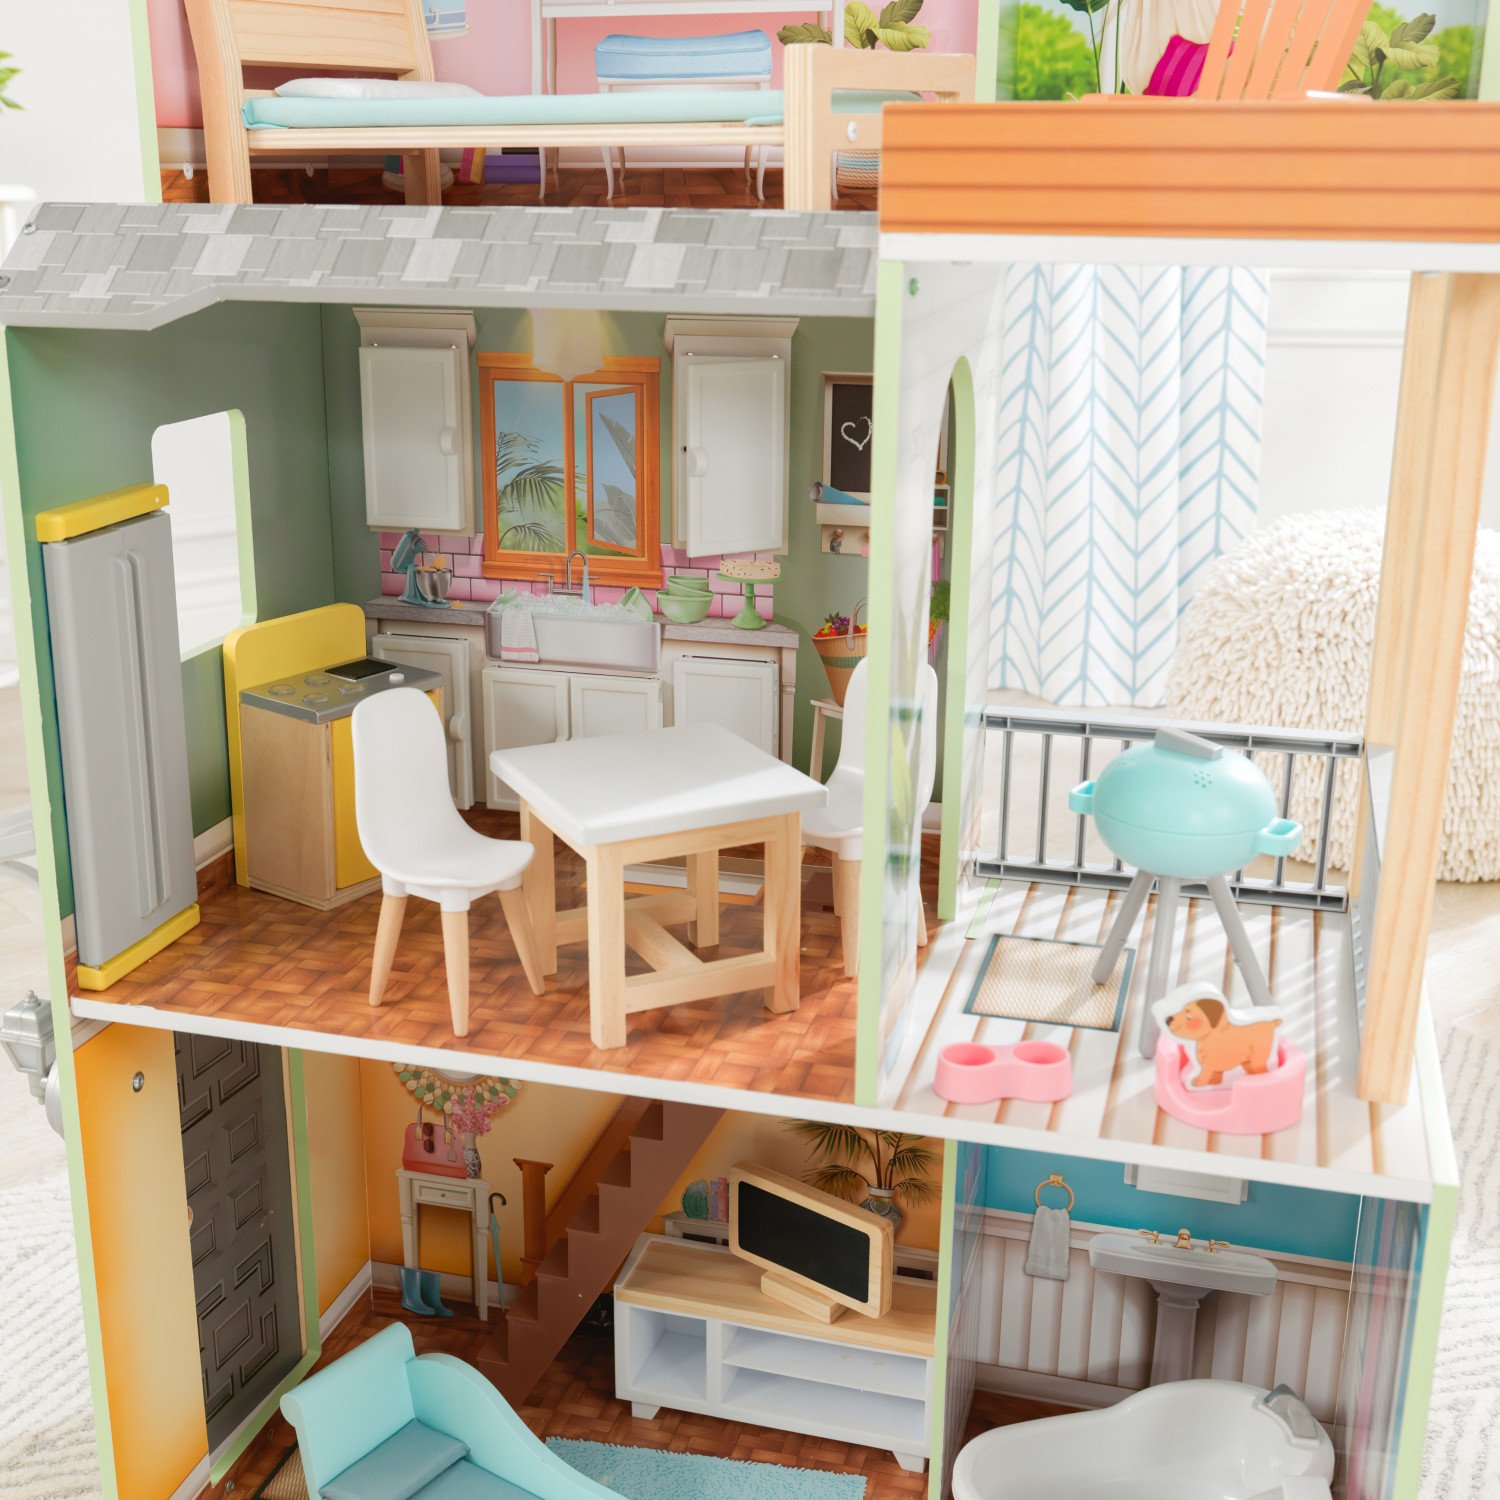 Кукольный домик с мебелью – Хэлли, 27 элементов  